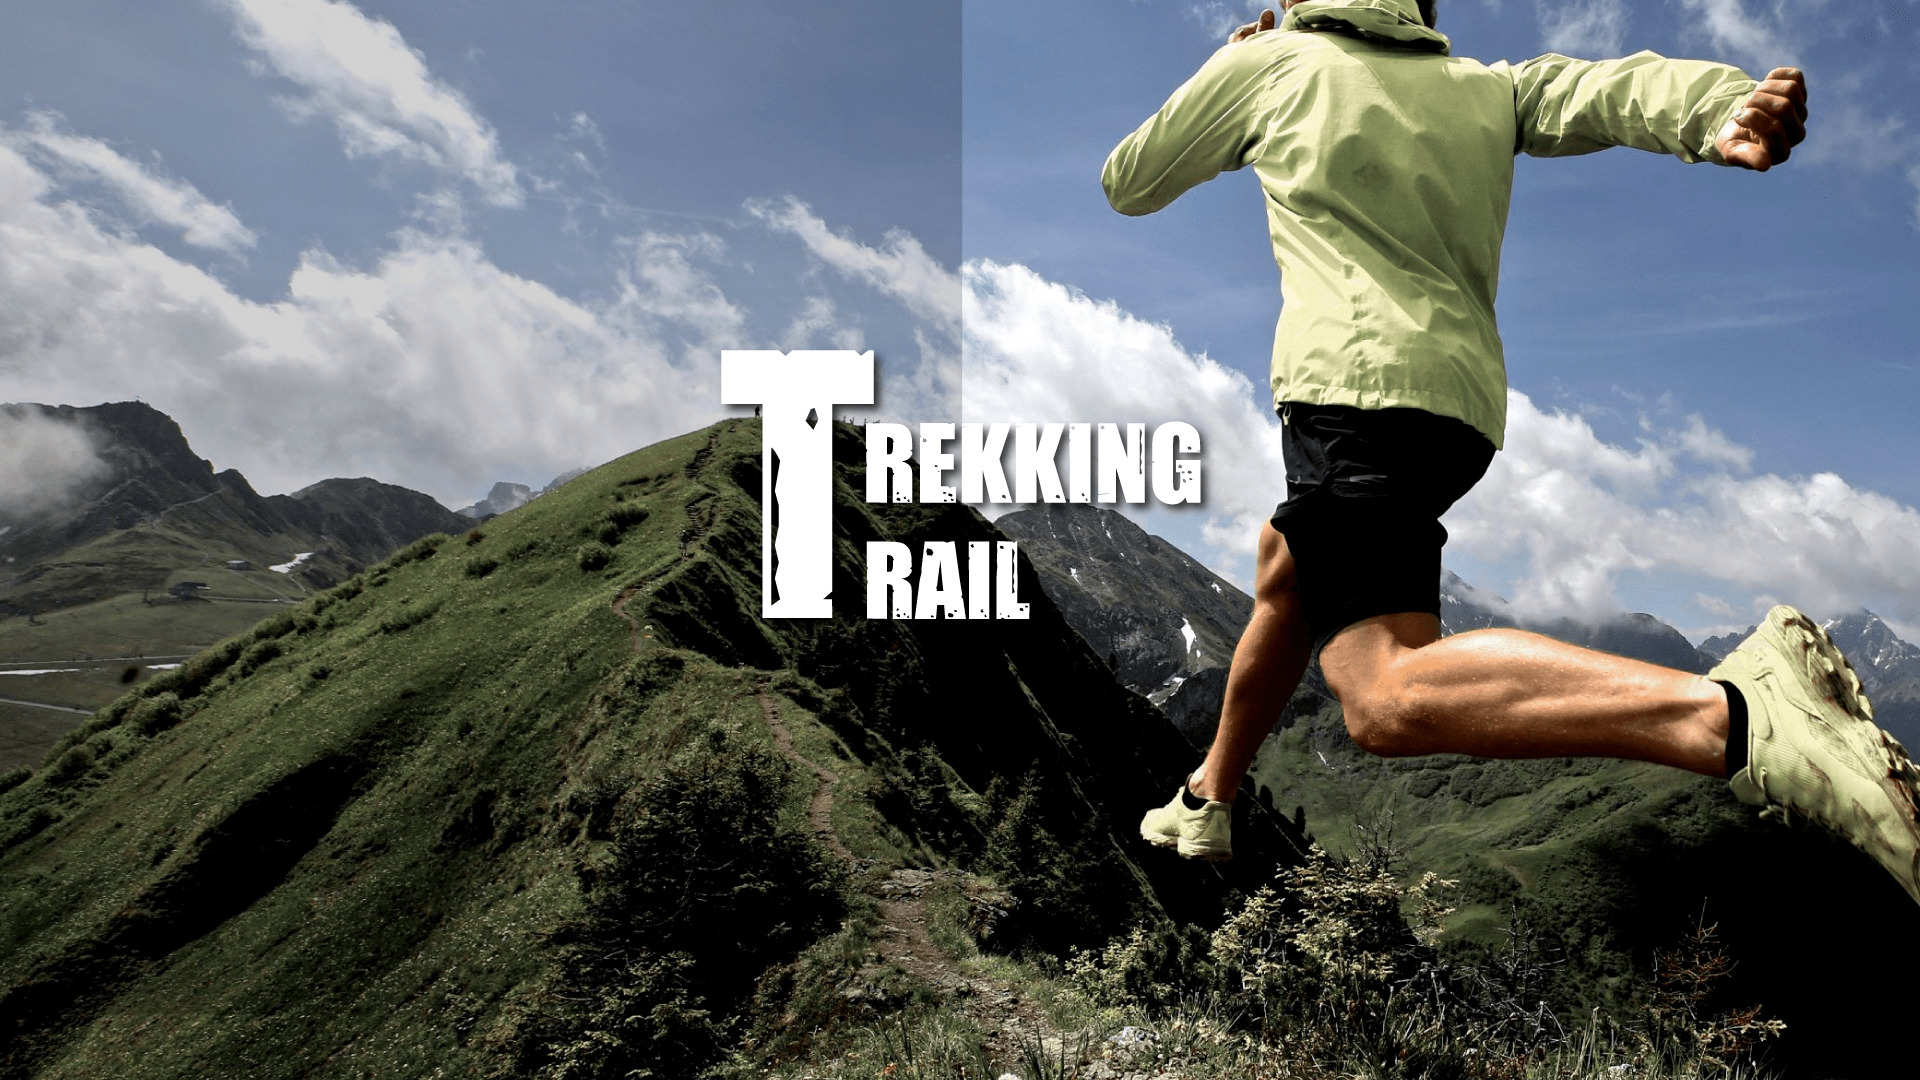 Zapatillas Trail o Zapatillas Trekking? Escoge bien tu calzado de montaña